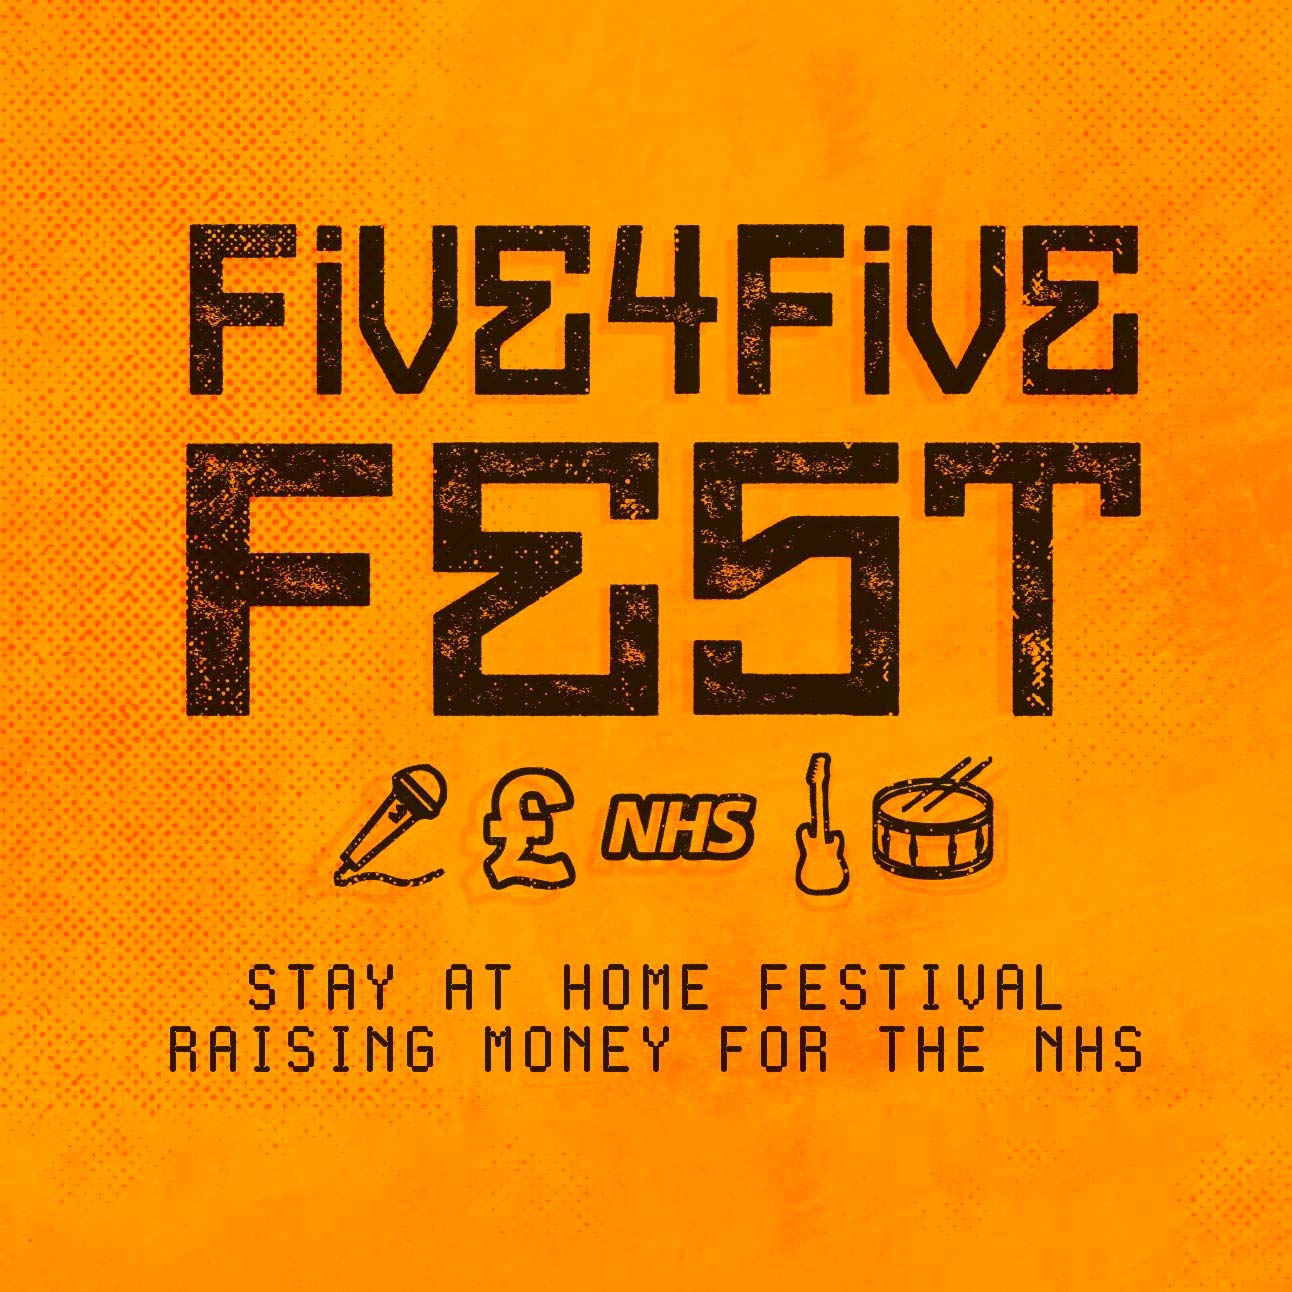 five4fivefest